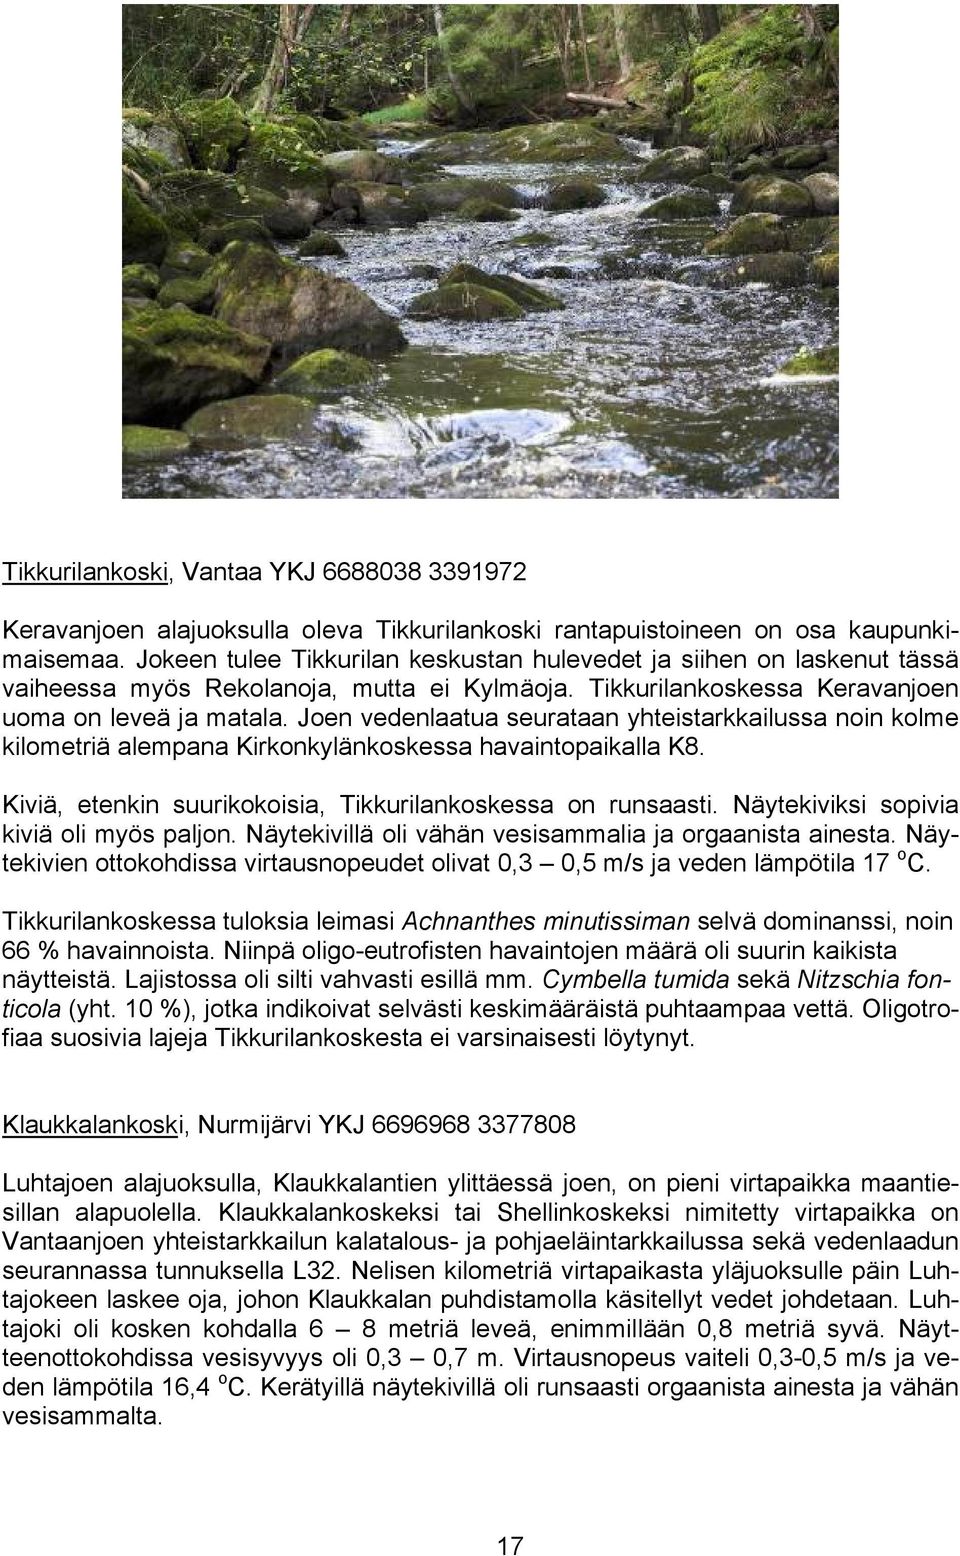 Joen vedenlaatua seurataan yhteistarkkailussa noin kolme kilometriä alempana Kirkonkylänkoskessa havaintopaikalla K8. Kiviä, etenkin suurikokoisia, Tikkurilankoskessa on runsaasti.